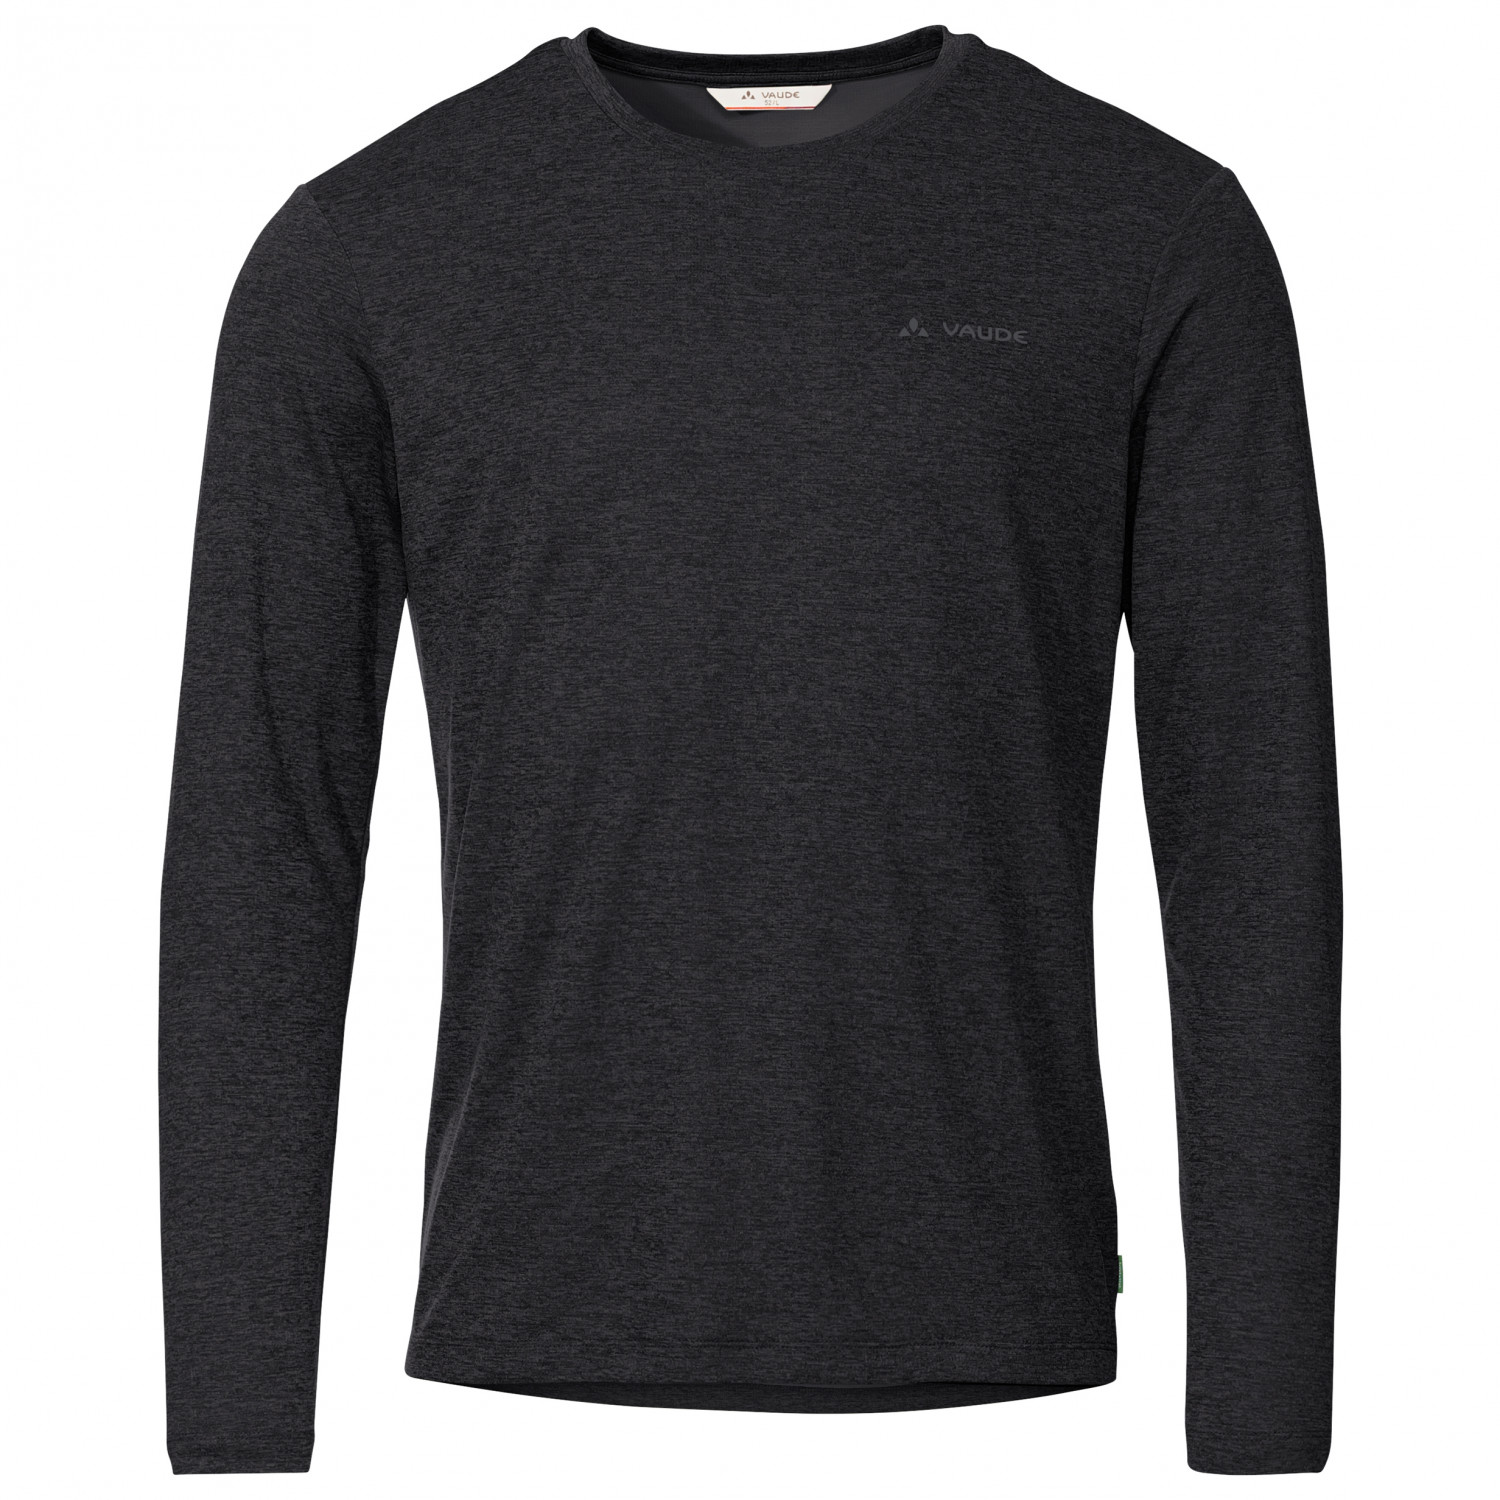 Функциональная рубашка Vaude Essential L/S T Shirt, черный